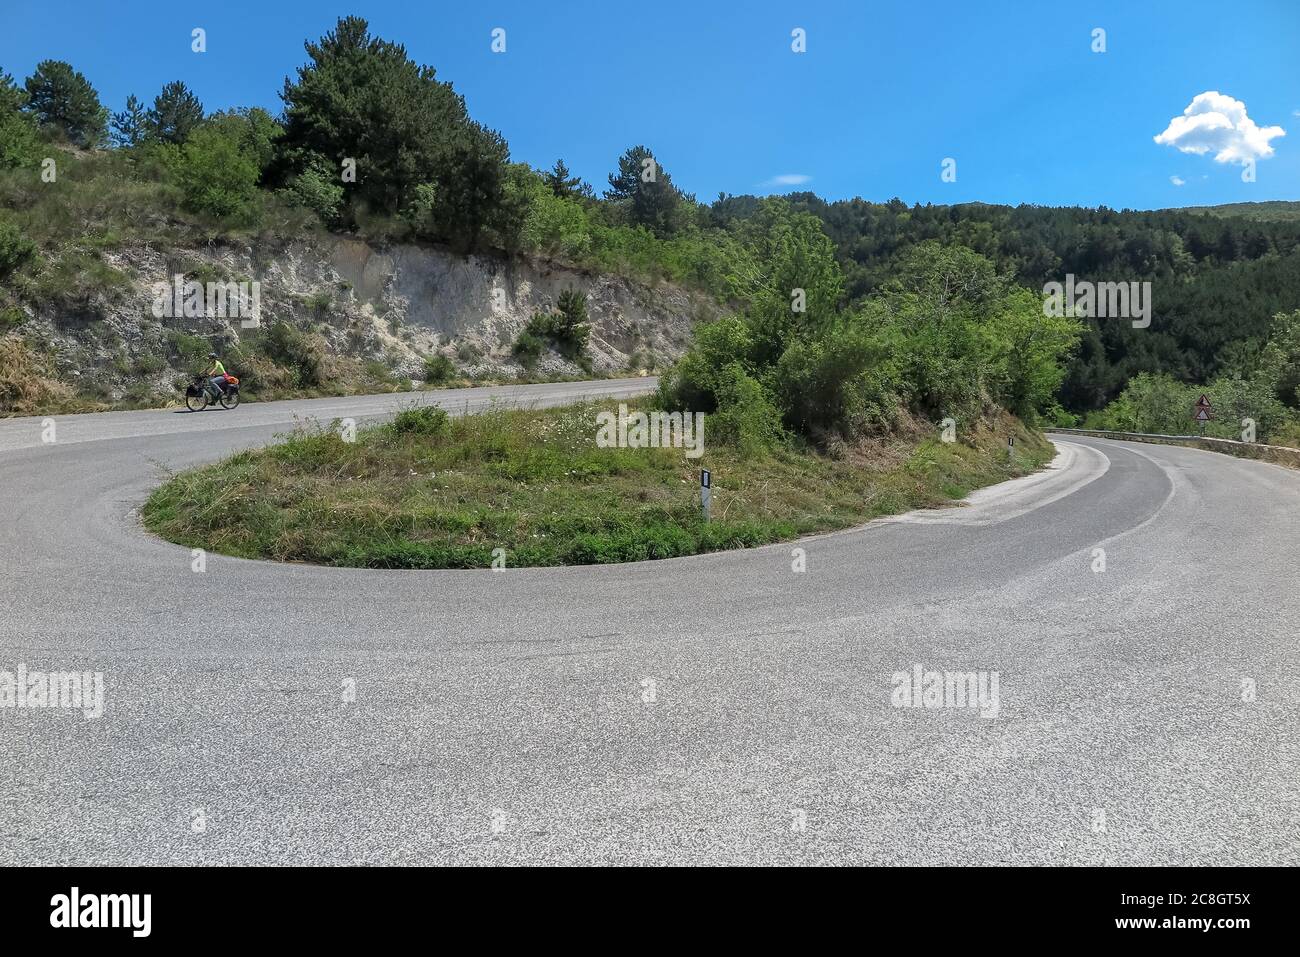 Grande curva, 180 gradi, che scende nella valle, comune di Pescina, regione Abruzzo, provincia di Aquila, Italia Foto Stock